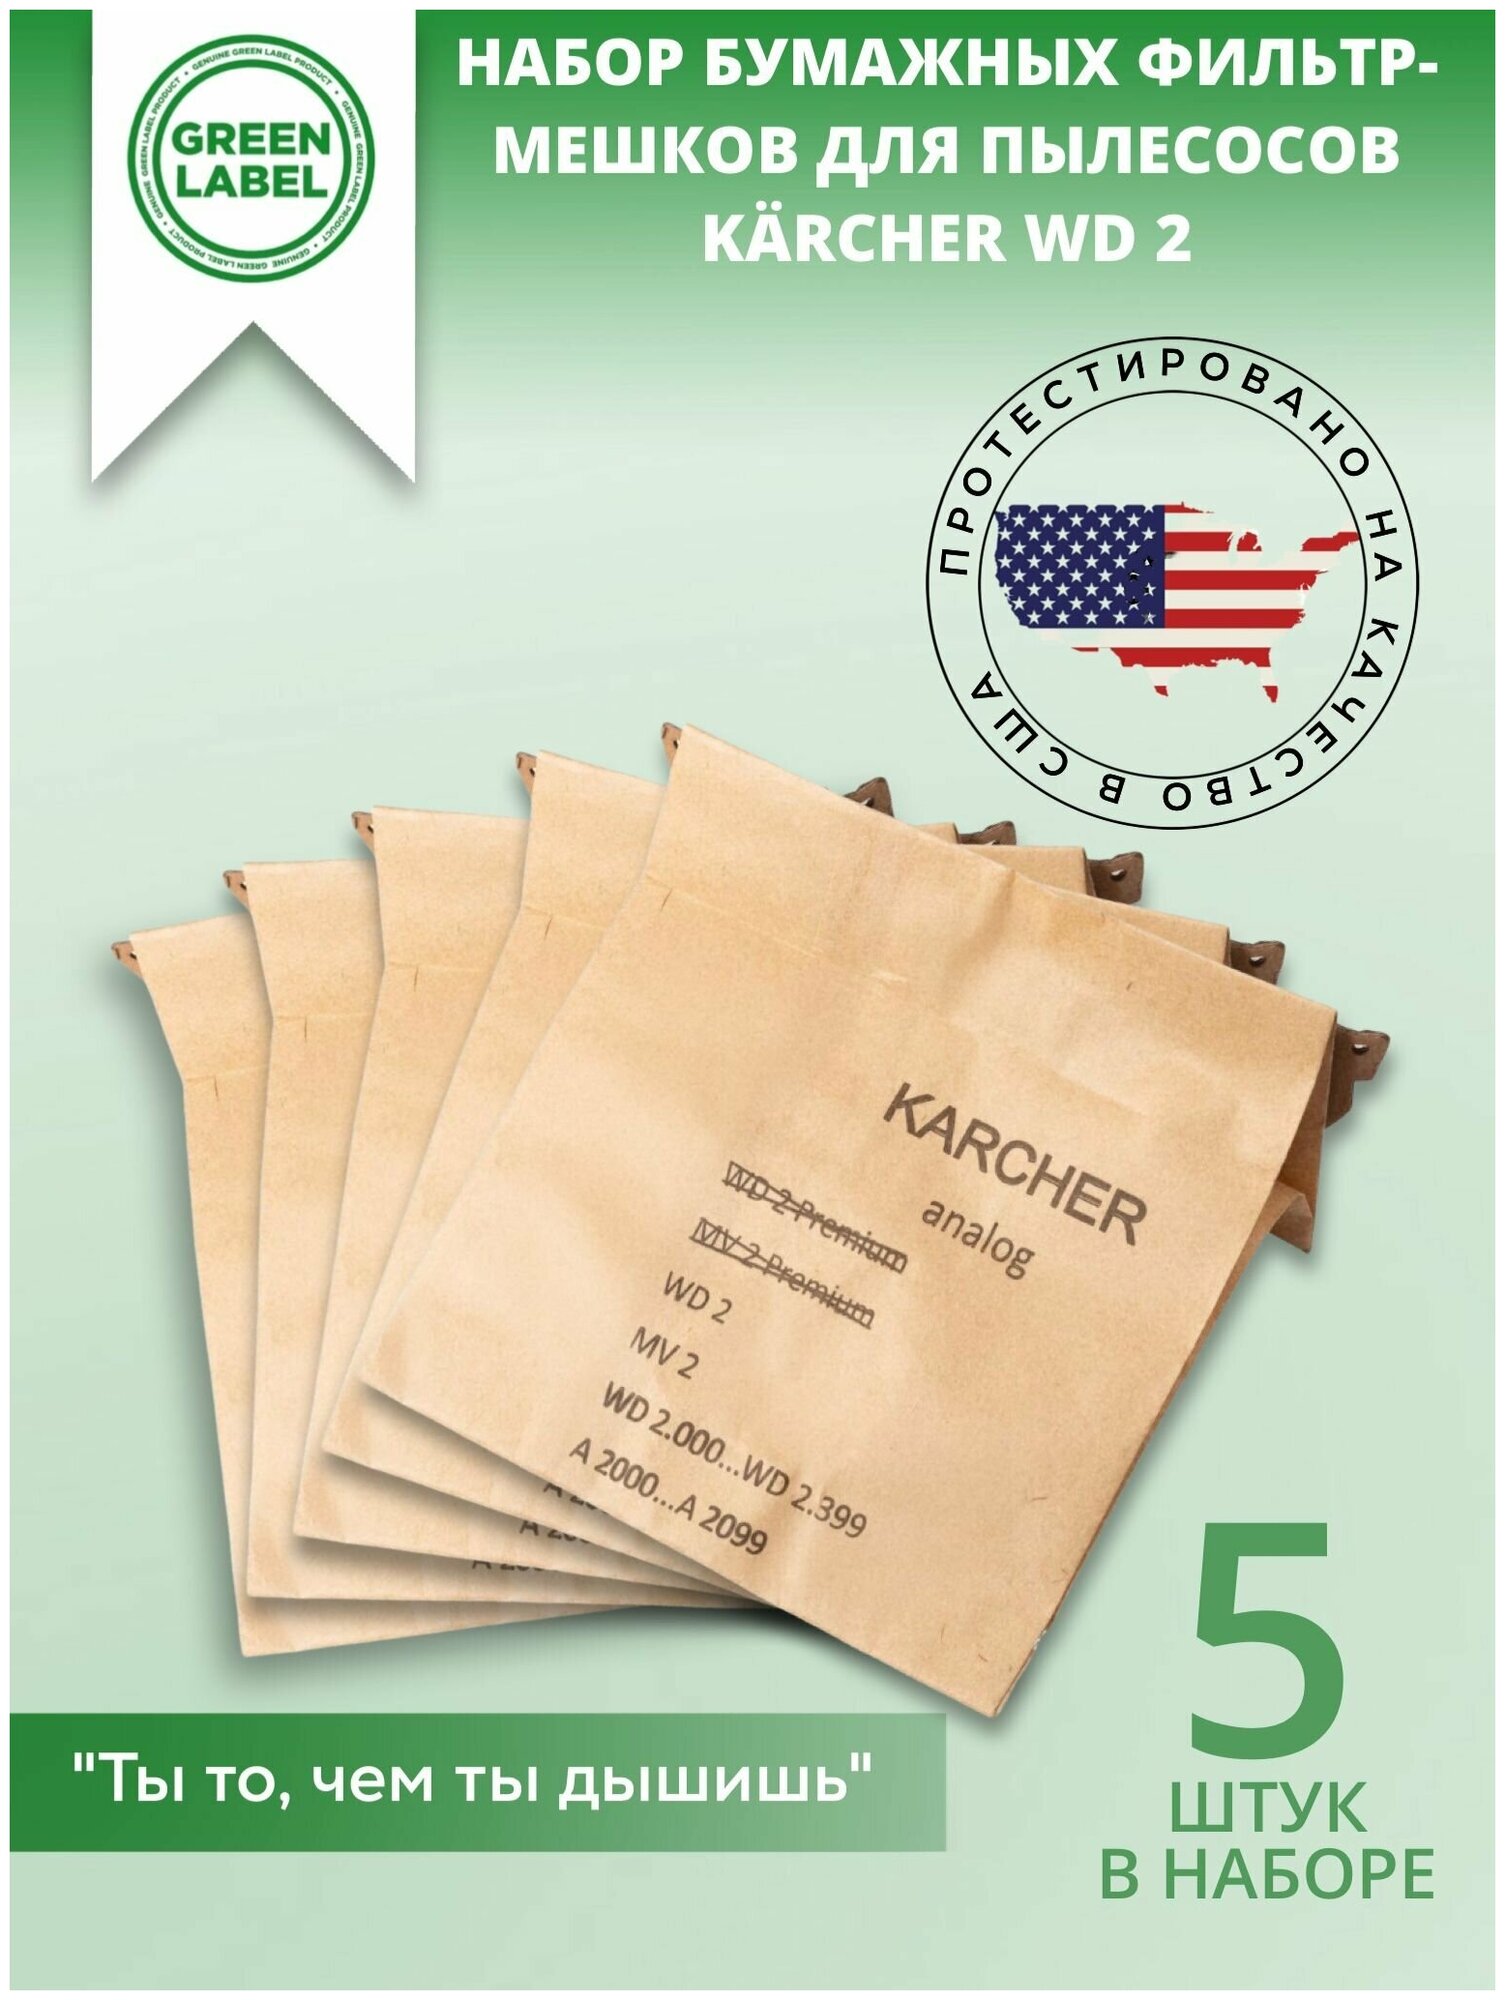 Green Label / Набор бумажных фильтр мешков пылесборников 6.904 322.0 для пылесосов Karcher WD 2 A 2003 A 2004 A 2024 A 2054 Me WD 2.200 MV2